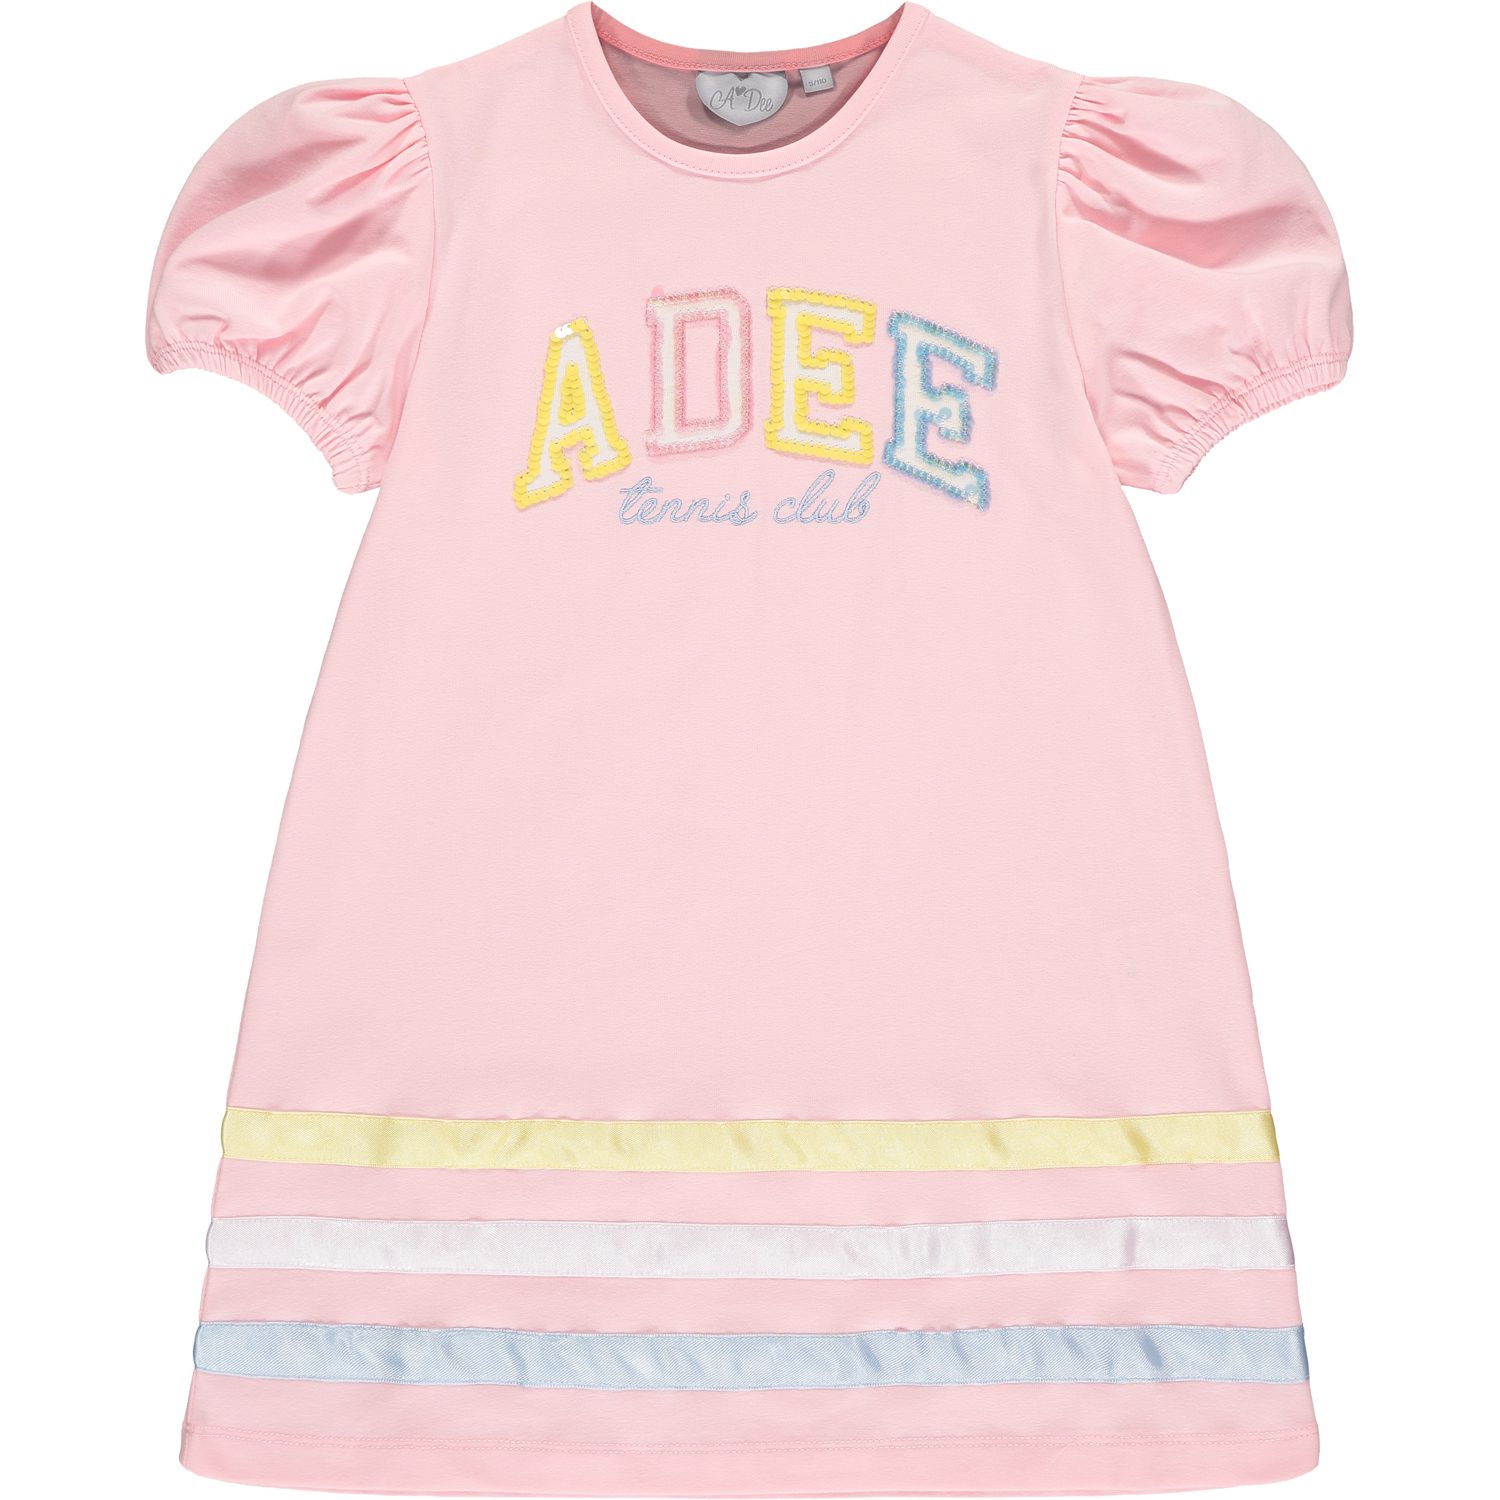 A'dee Voni roze jurk met logo voorkant